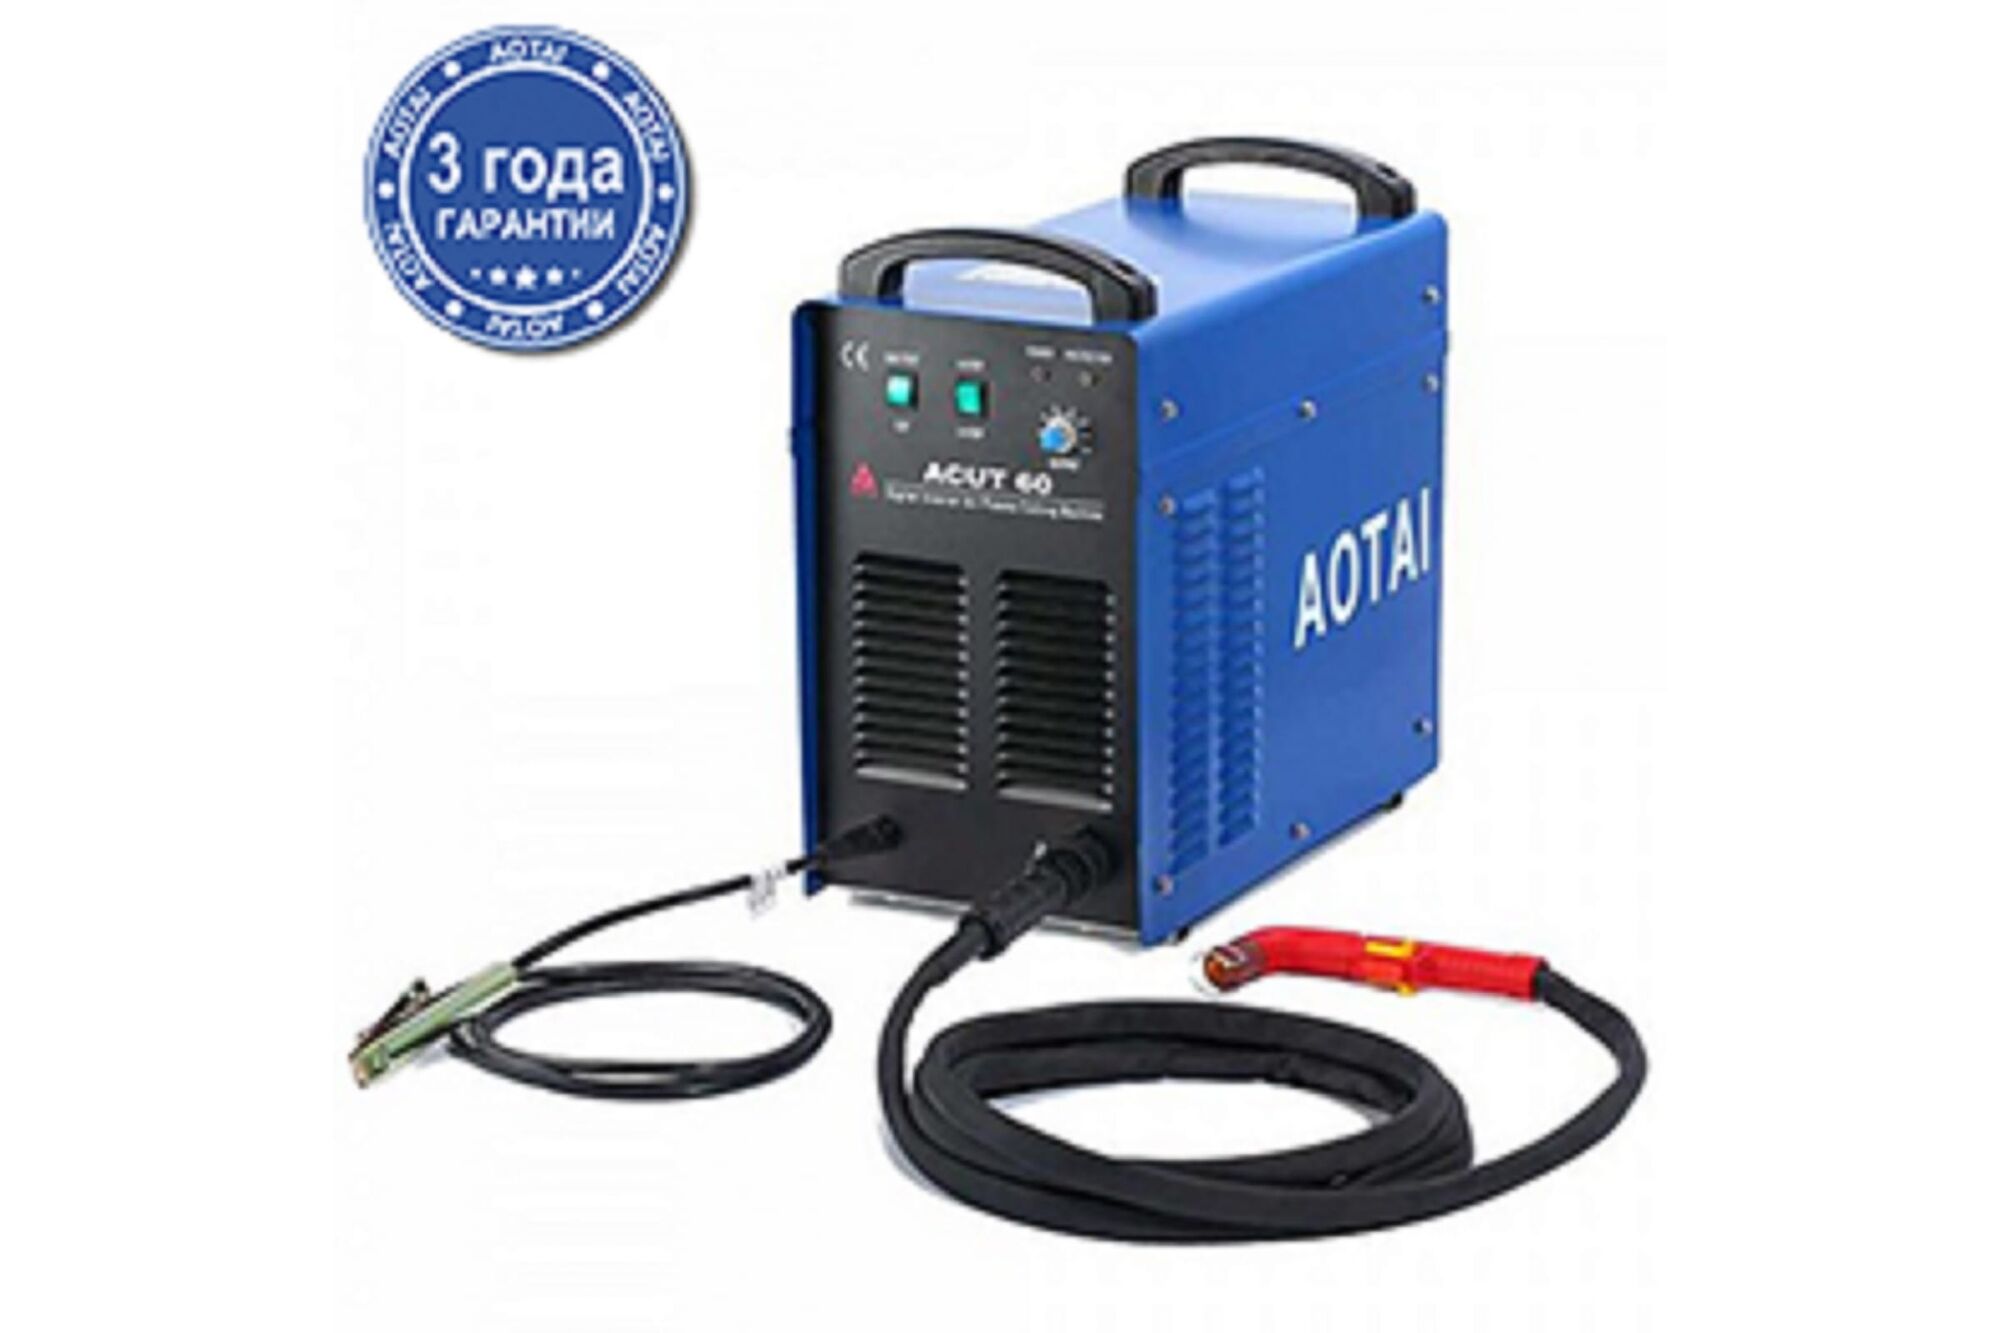 Инвертор AOTAI ACUT60, комплект 540060-00013 Энергия